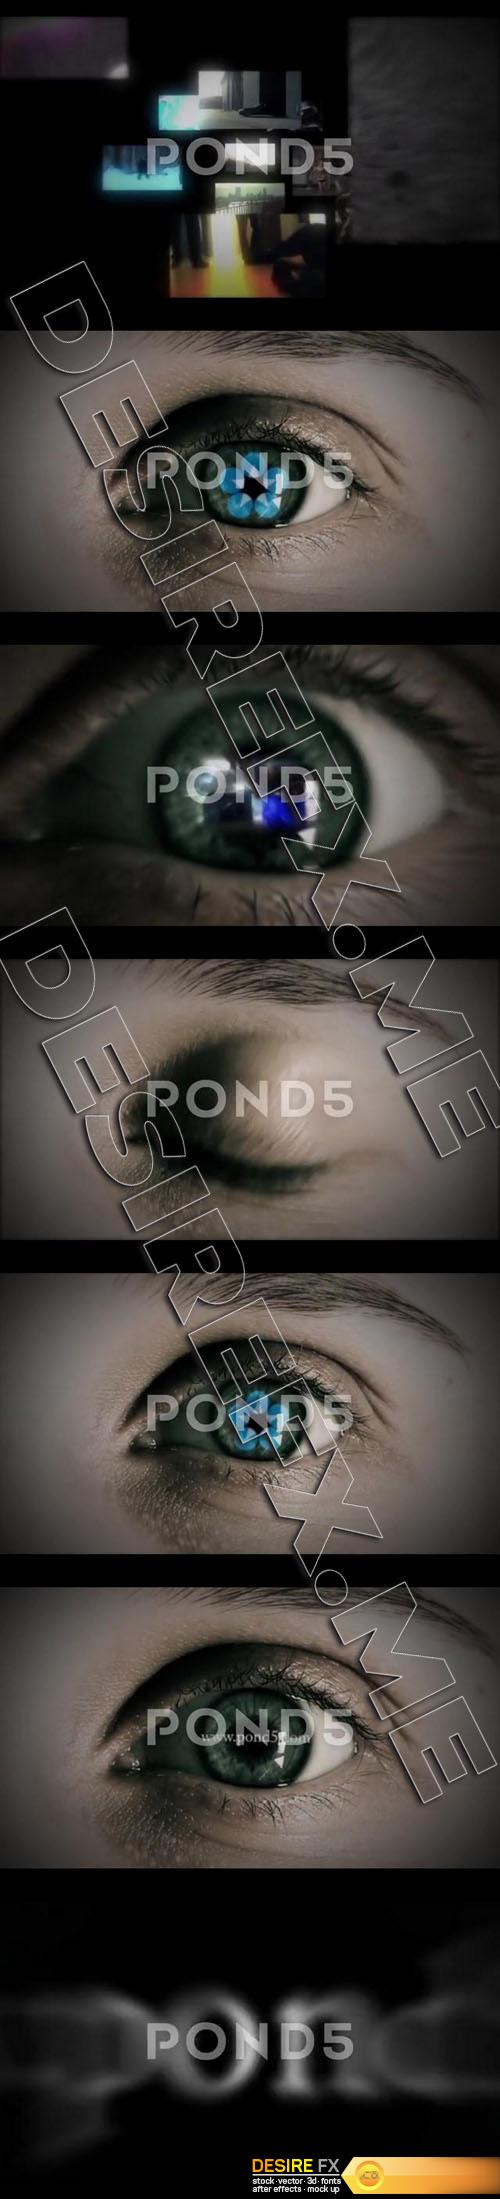 Pond5 - Eye Logo - 82271006